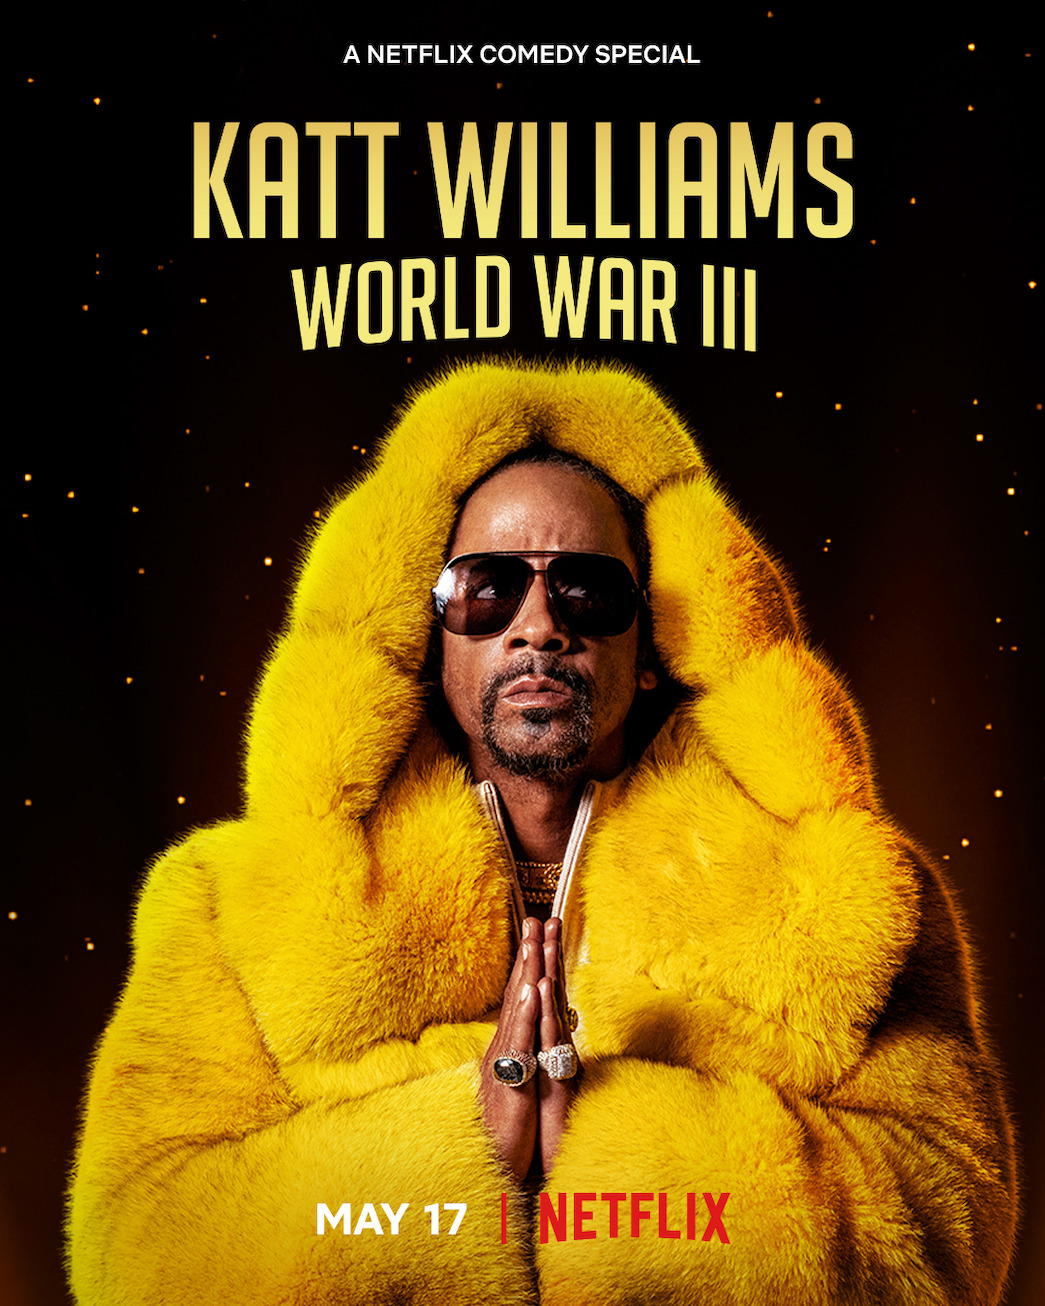 Katt Williams Stand-Up 'World War III' Coming to Netflix Netflix